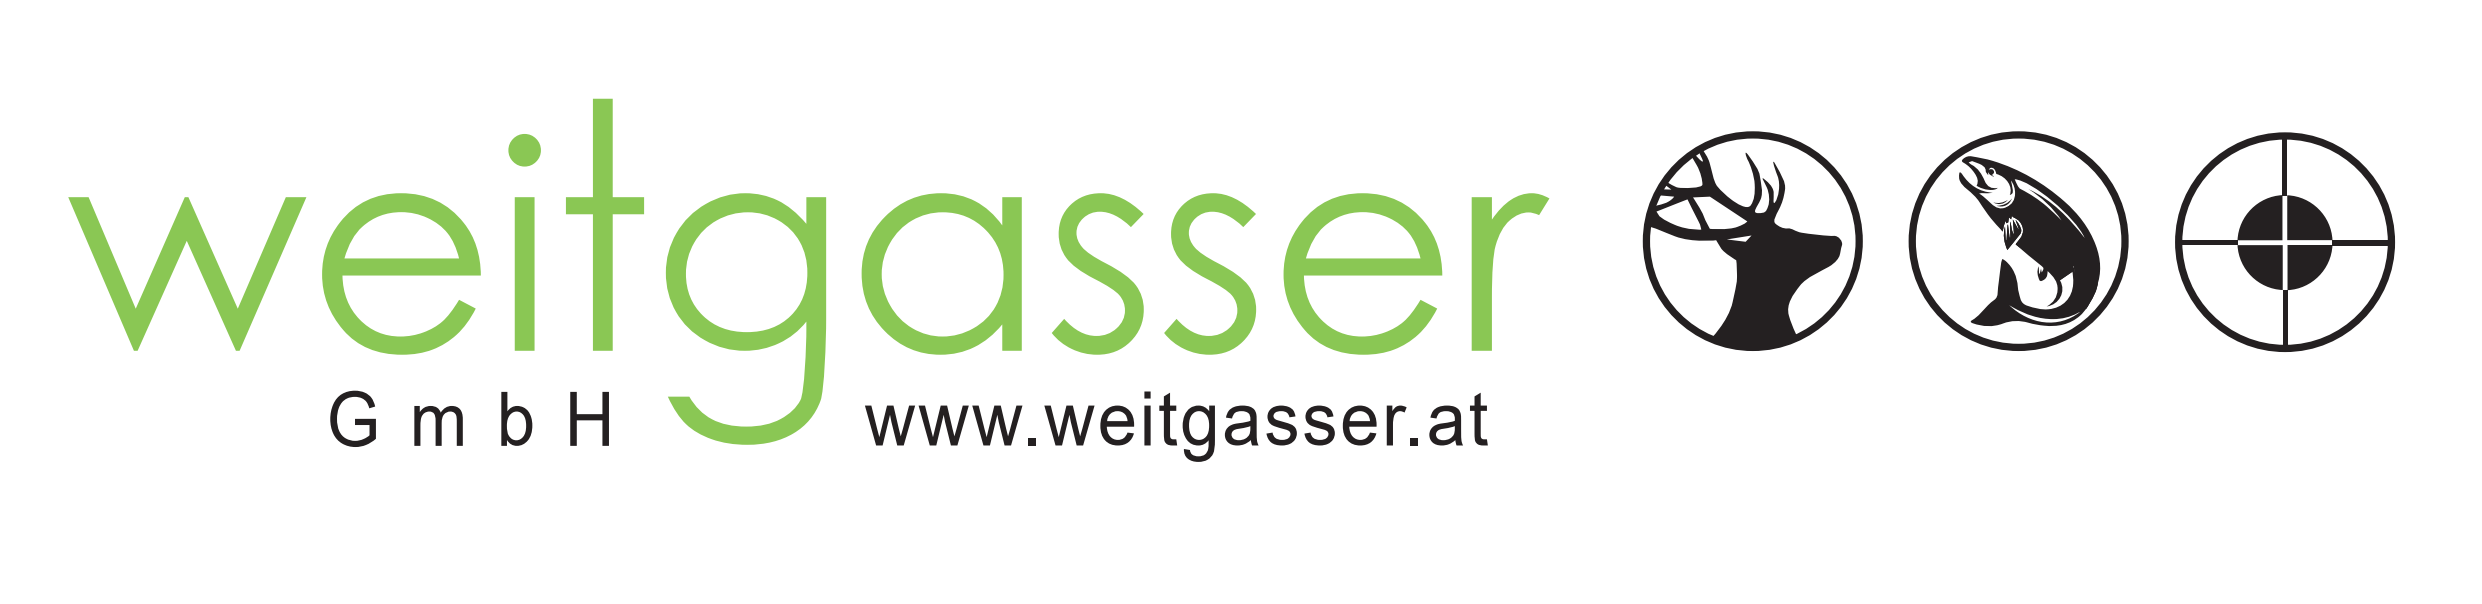 Weitgasser GmbH Logo